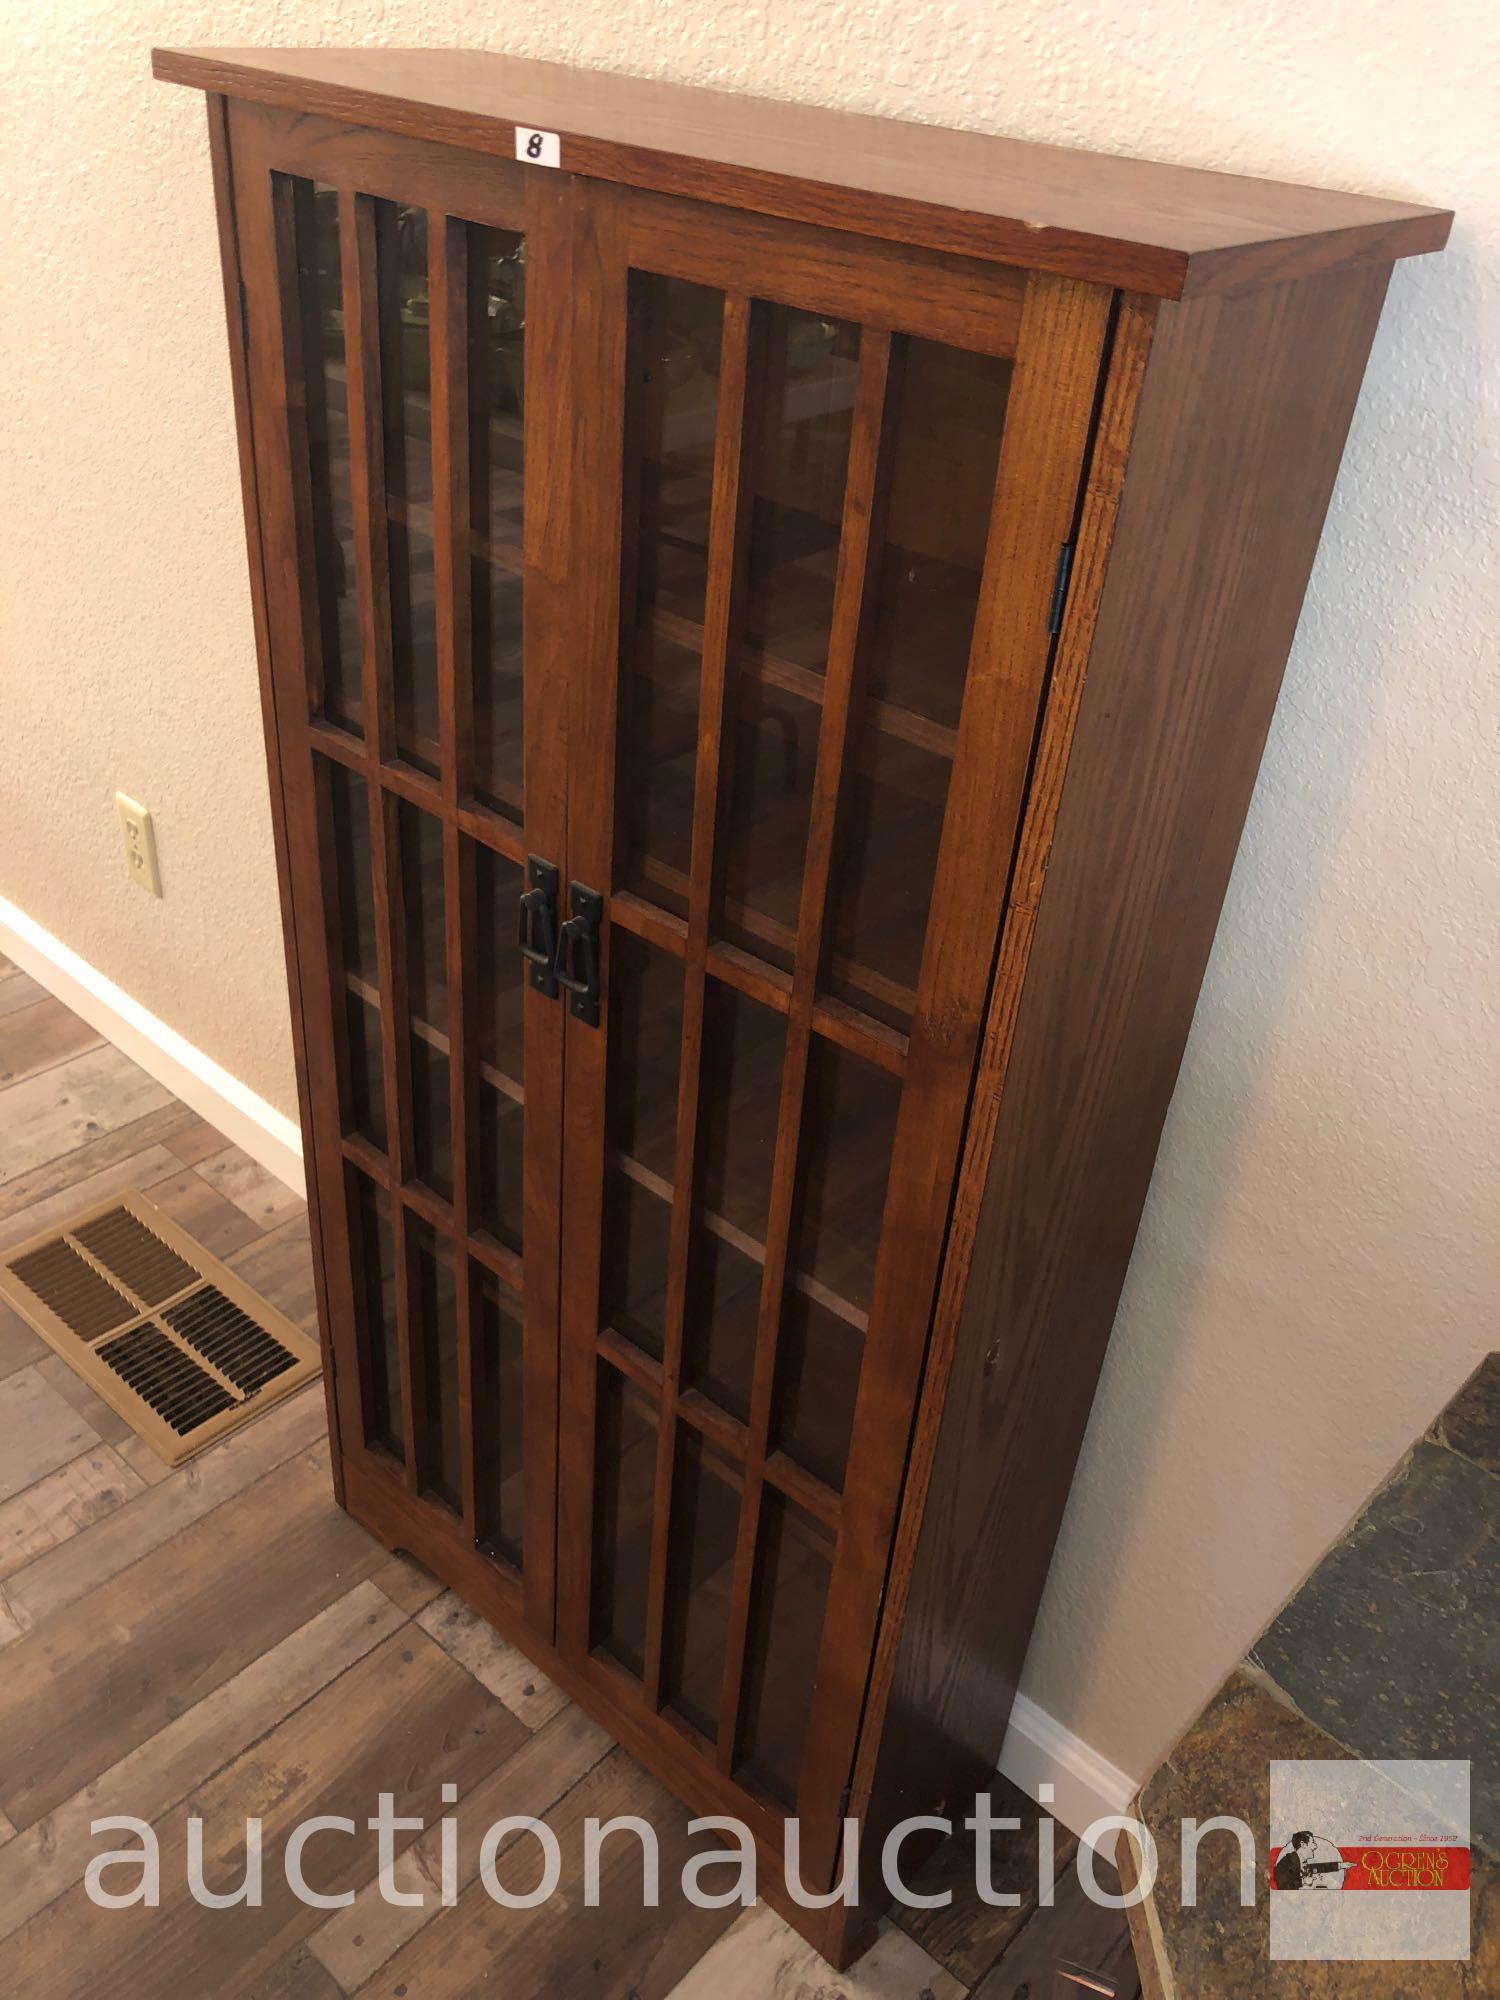 Furniture - Mission styled oak display cabinet, 5 shelves, 2 door, 26"wx9"dx48"h